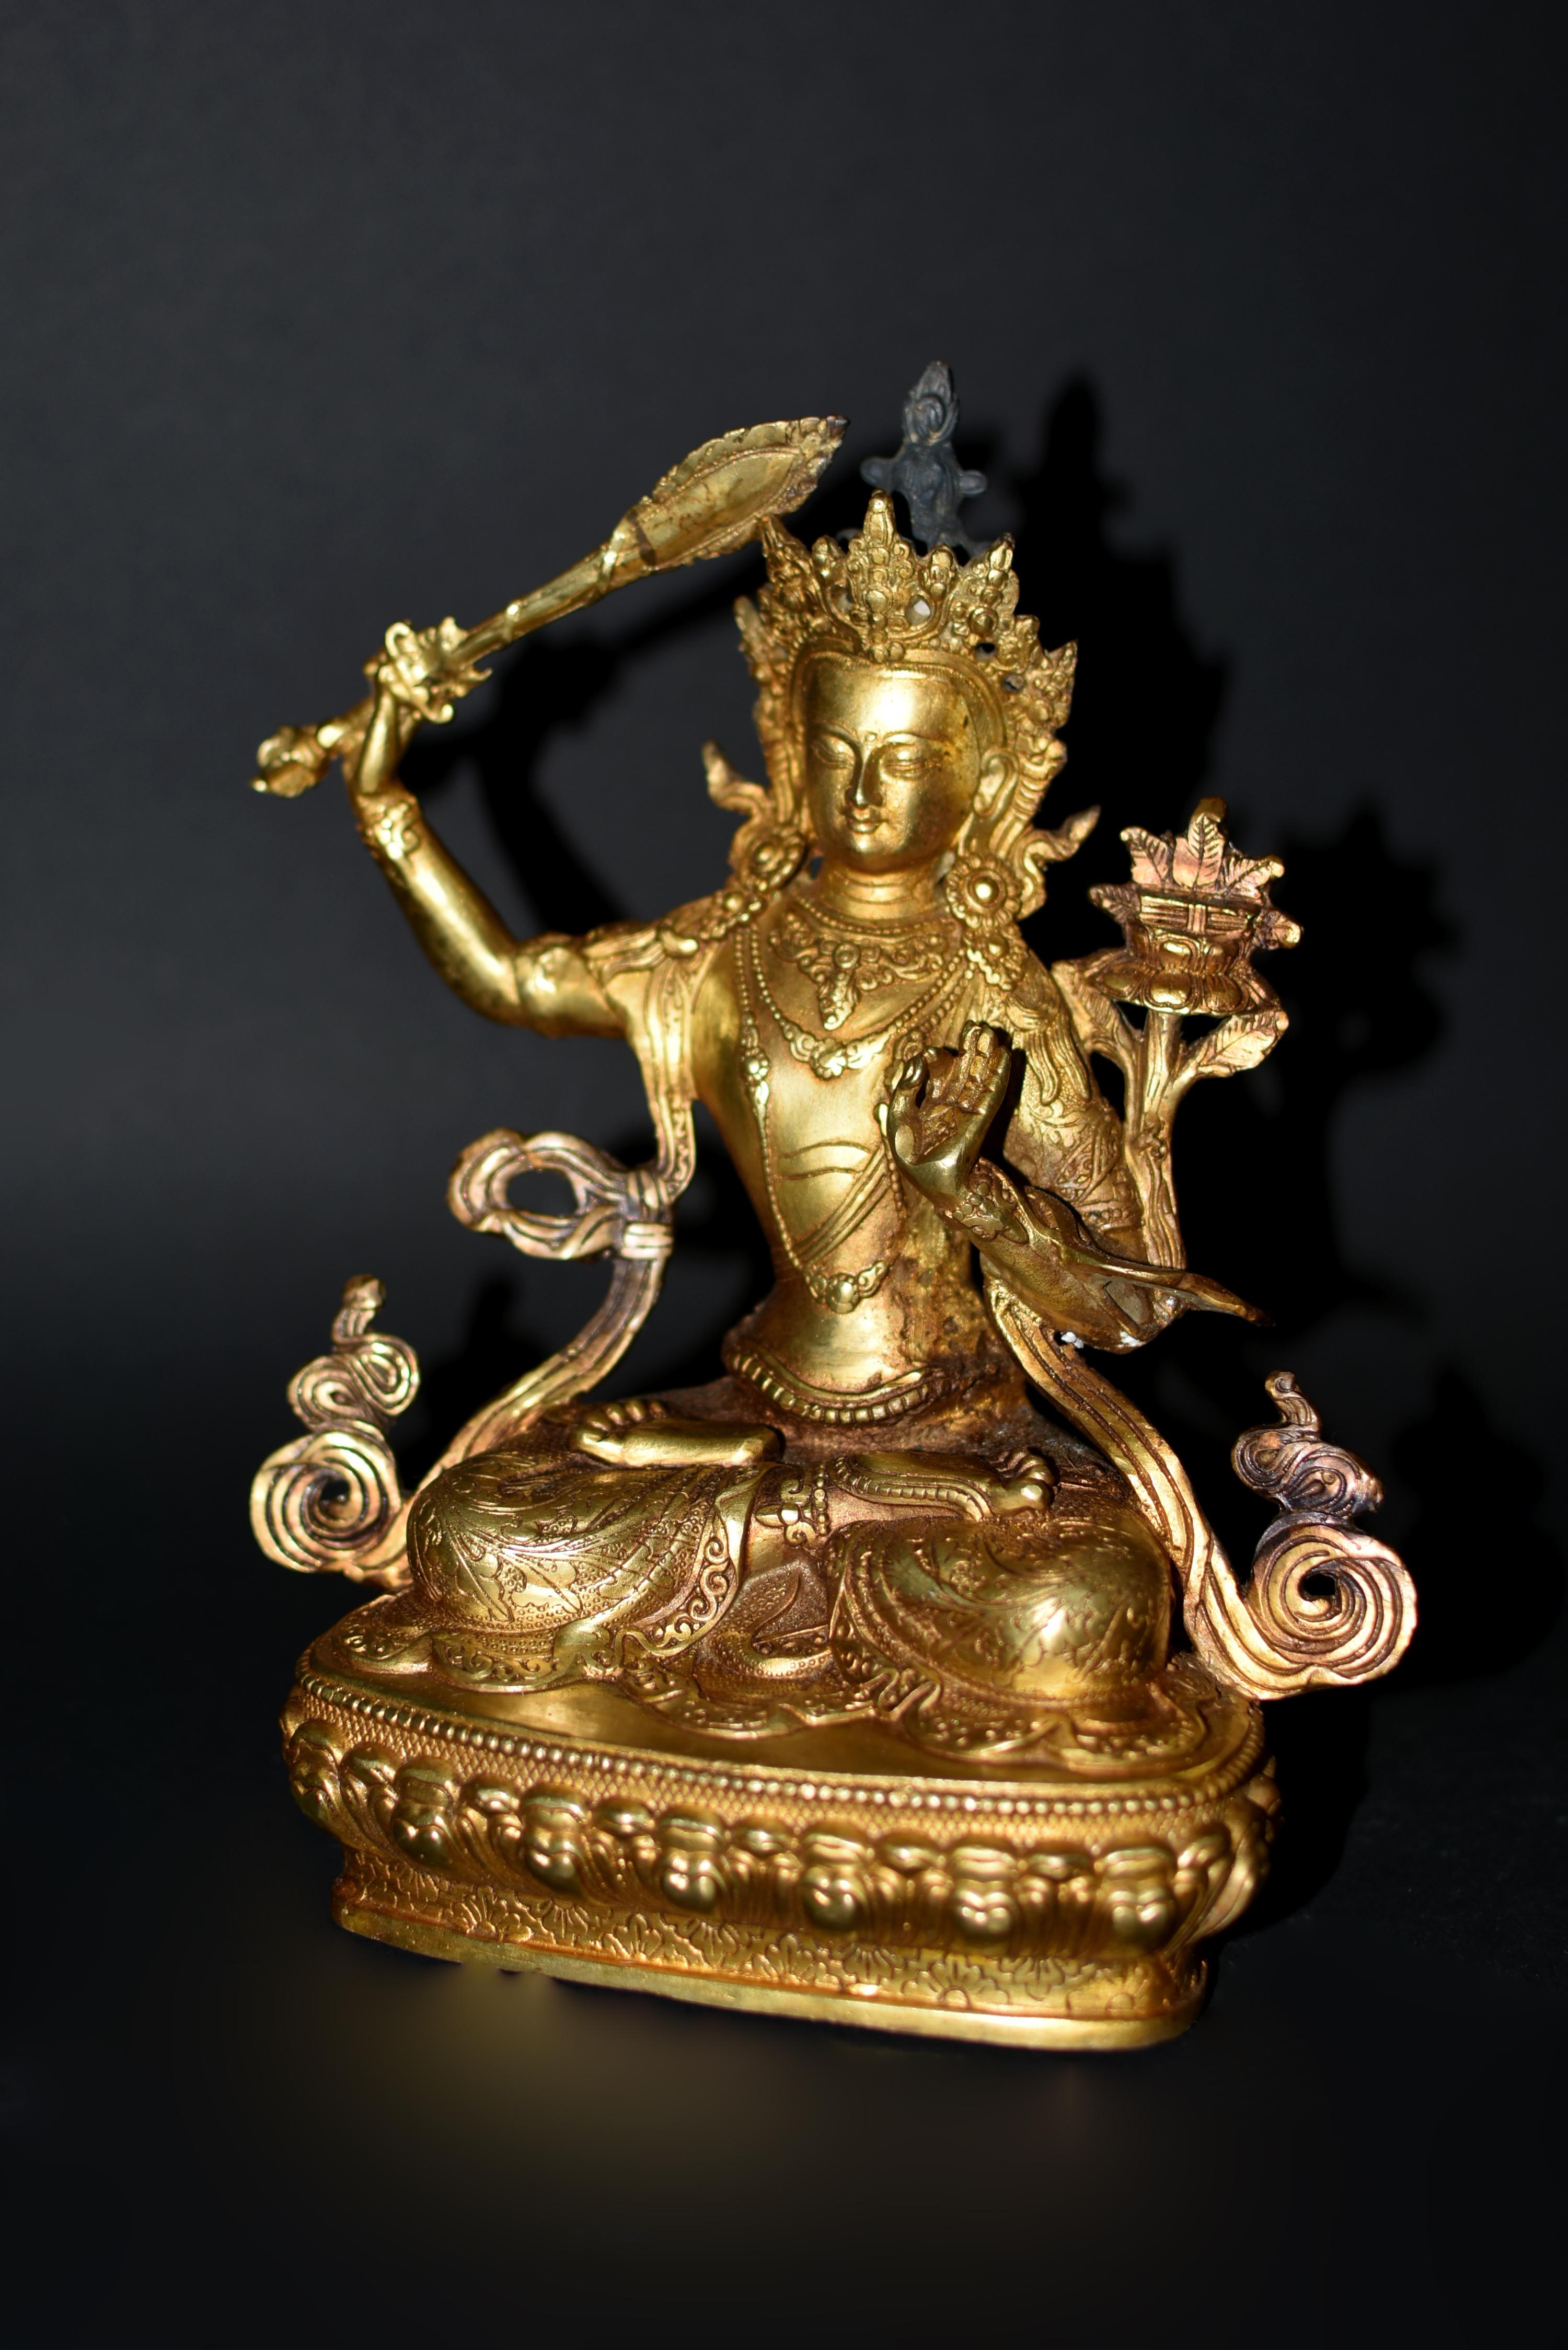 Eine schöne vergoldete Bronzestatue des tibetischen Bodhisattva Manjushree. Er sitzt in Vajrasana auf einem doppelten Lotussockel, seine rechte Hand hält das Schwert der Weisheit und seine linke Hand hält den Stiel eines Lotus in Jnana Mudra, der